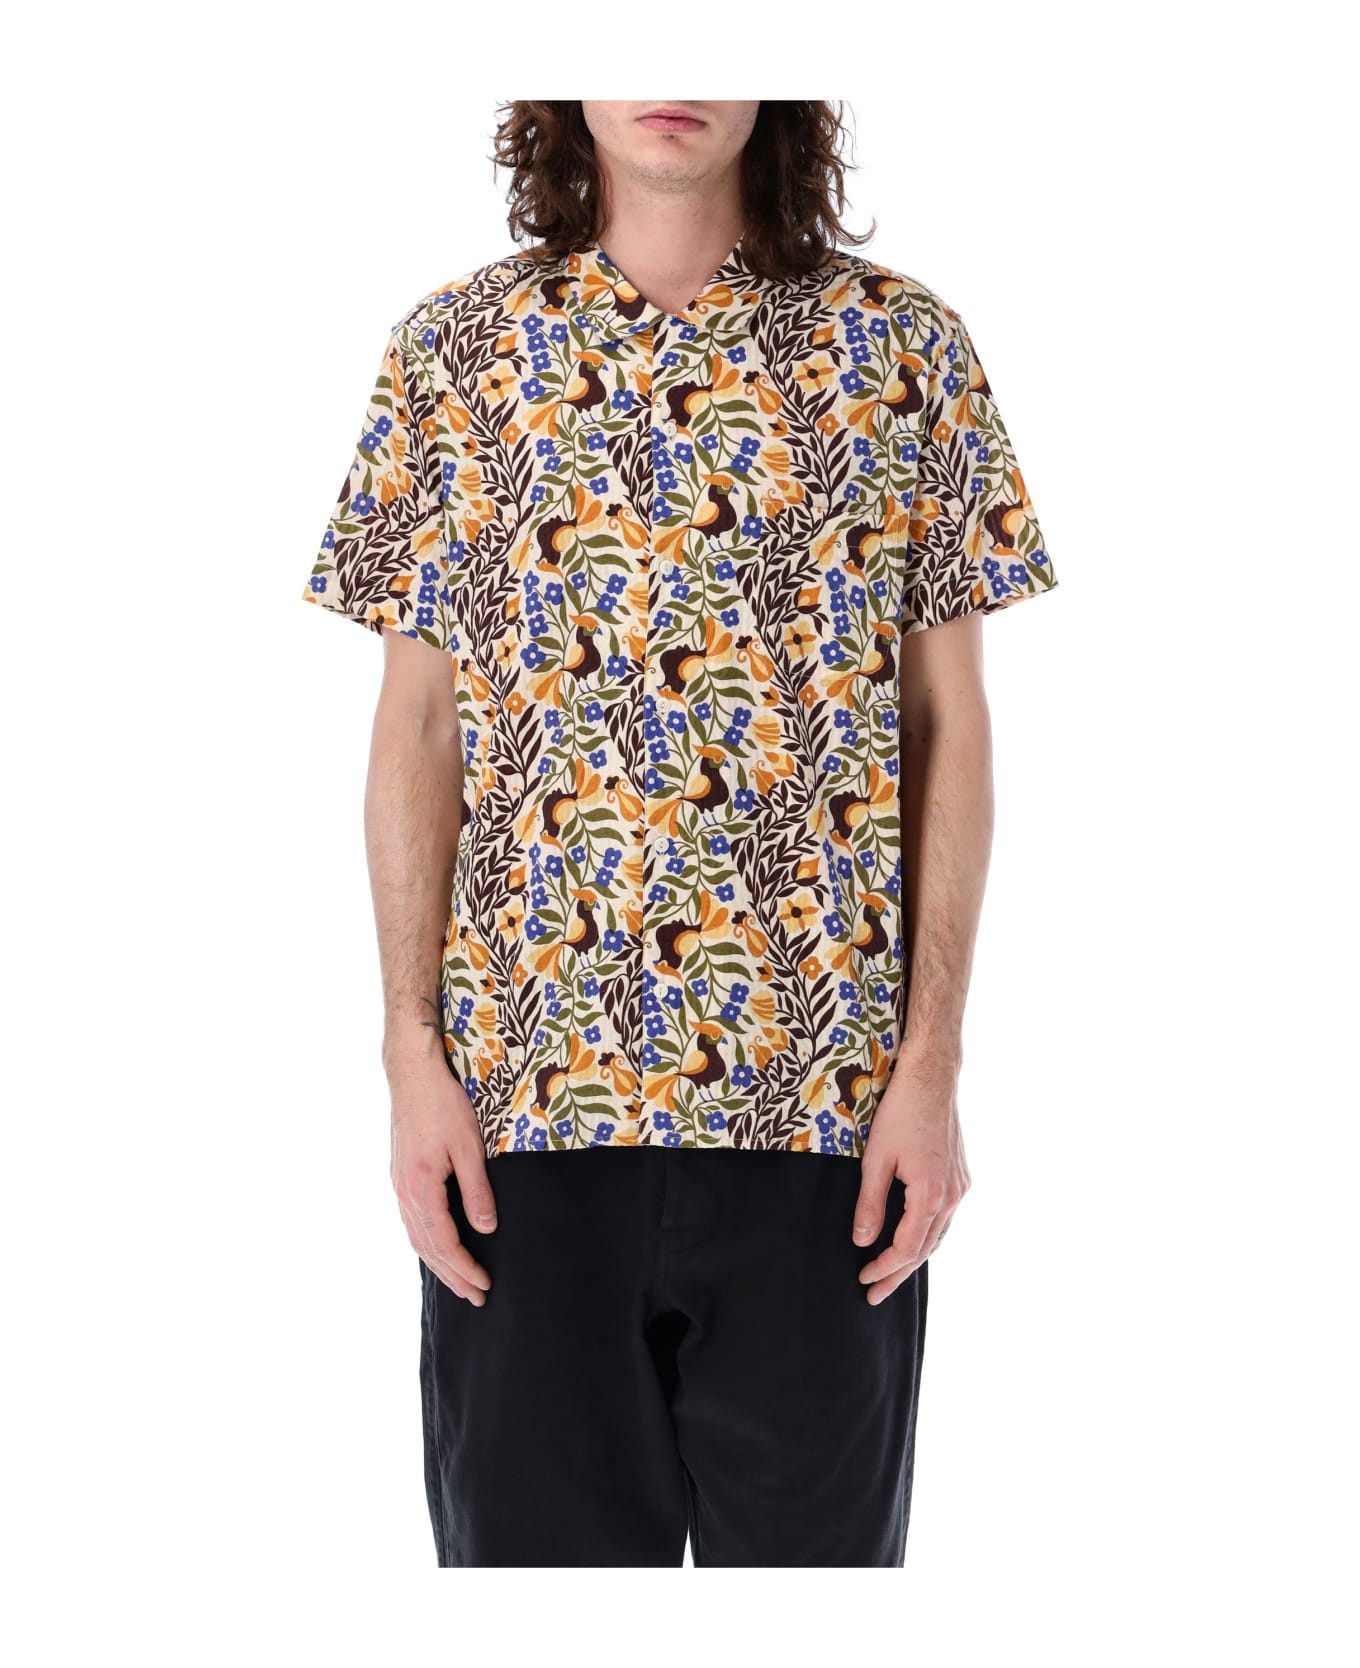 YMC Malick Shirt - BIRD MULTI シャツ